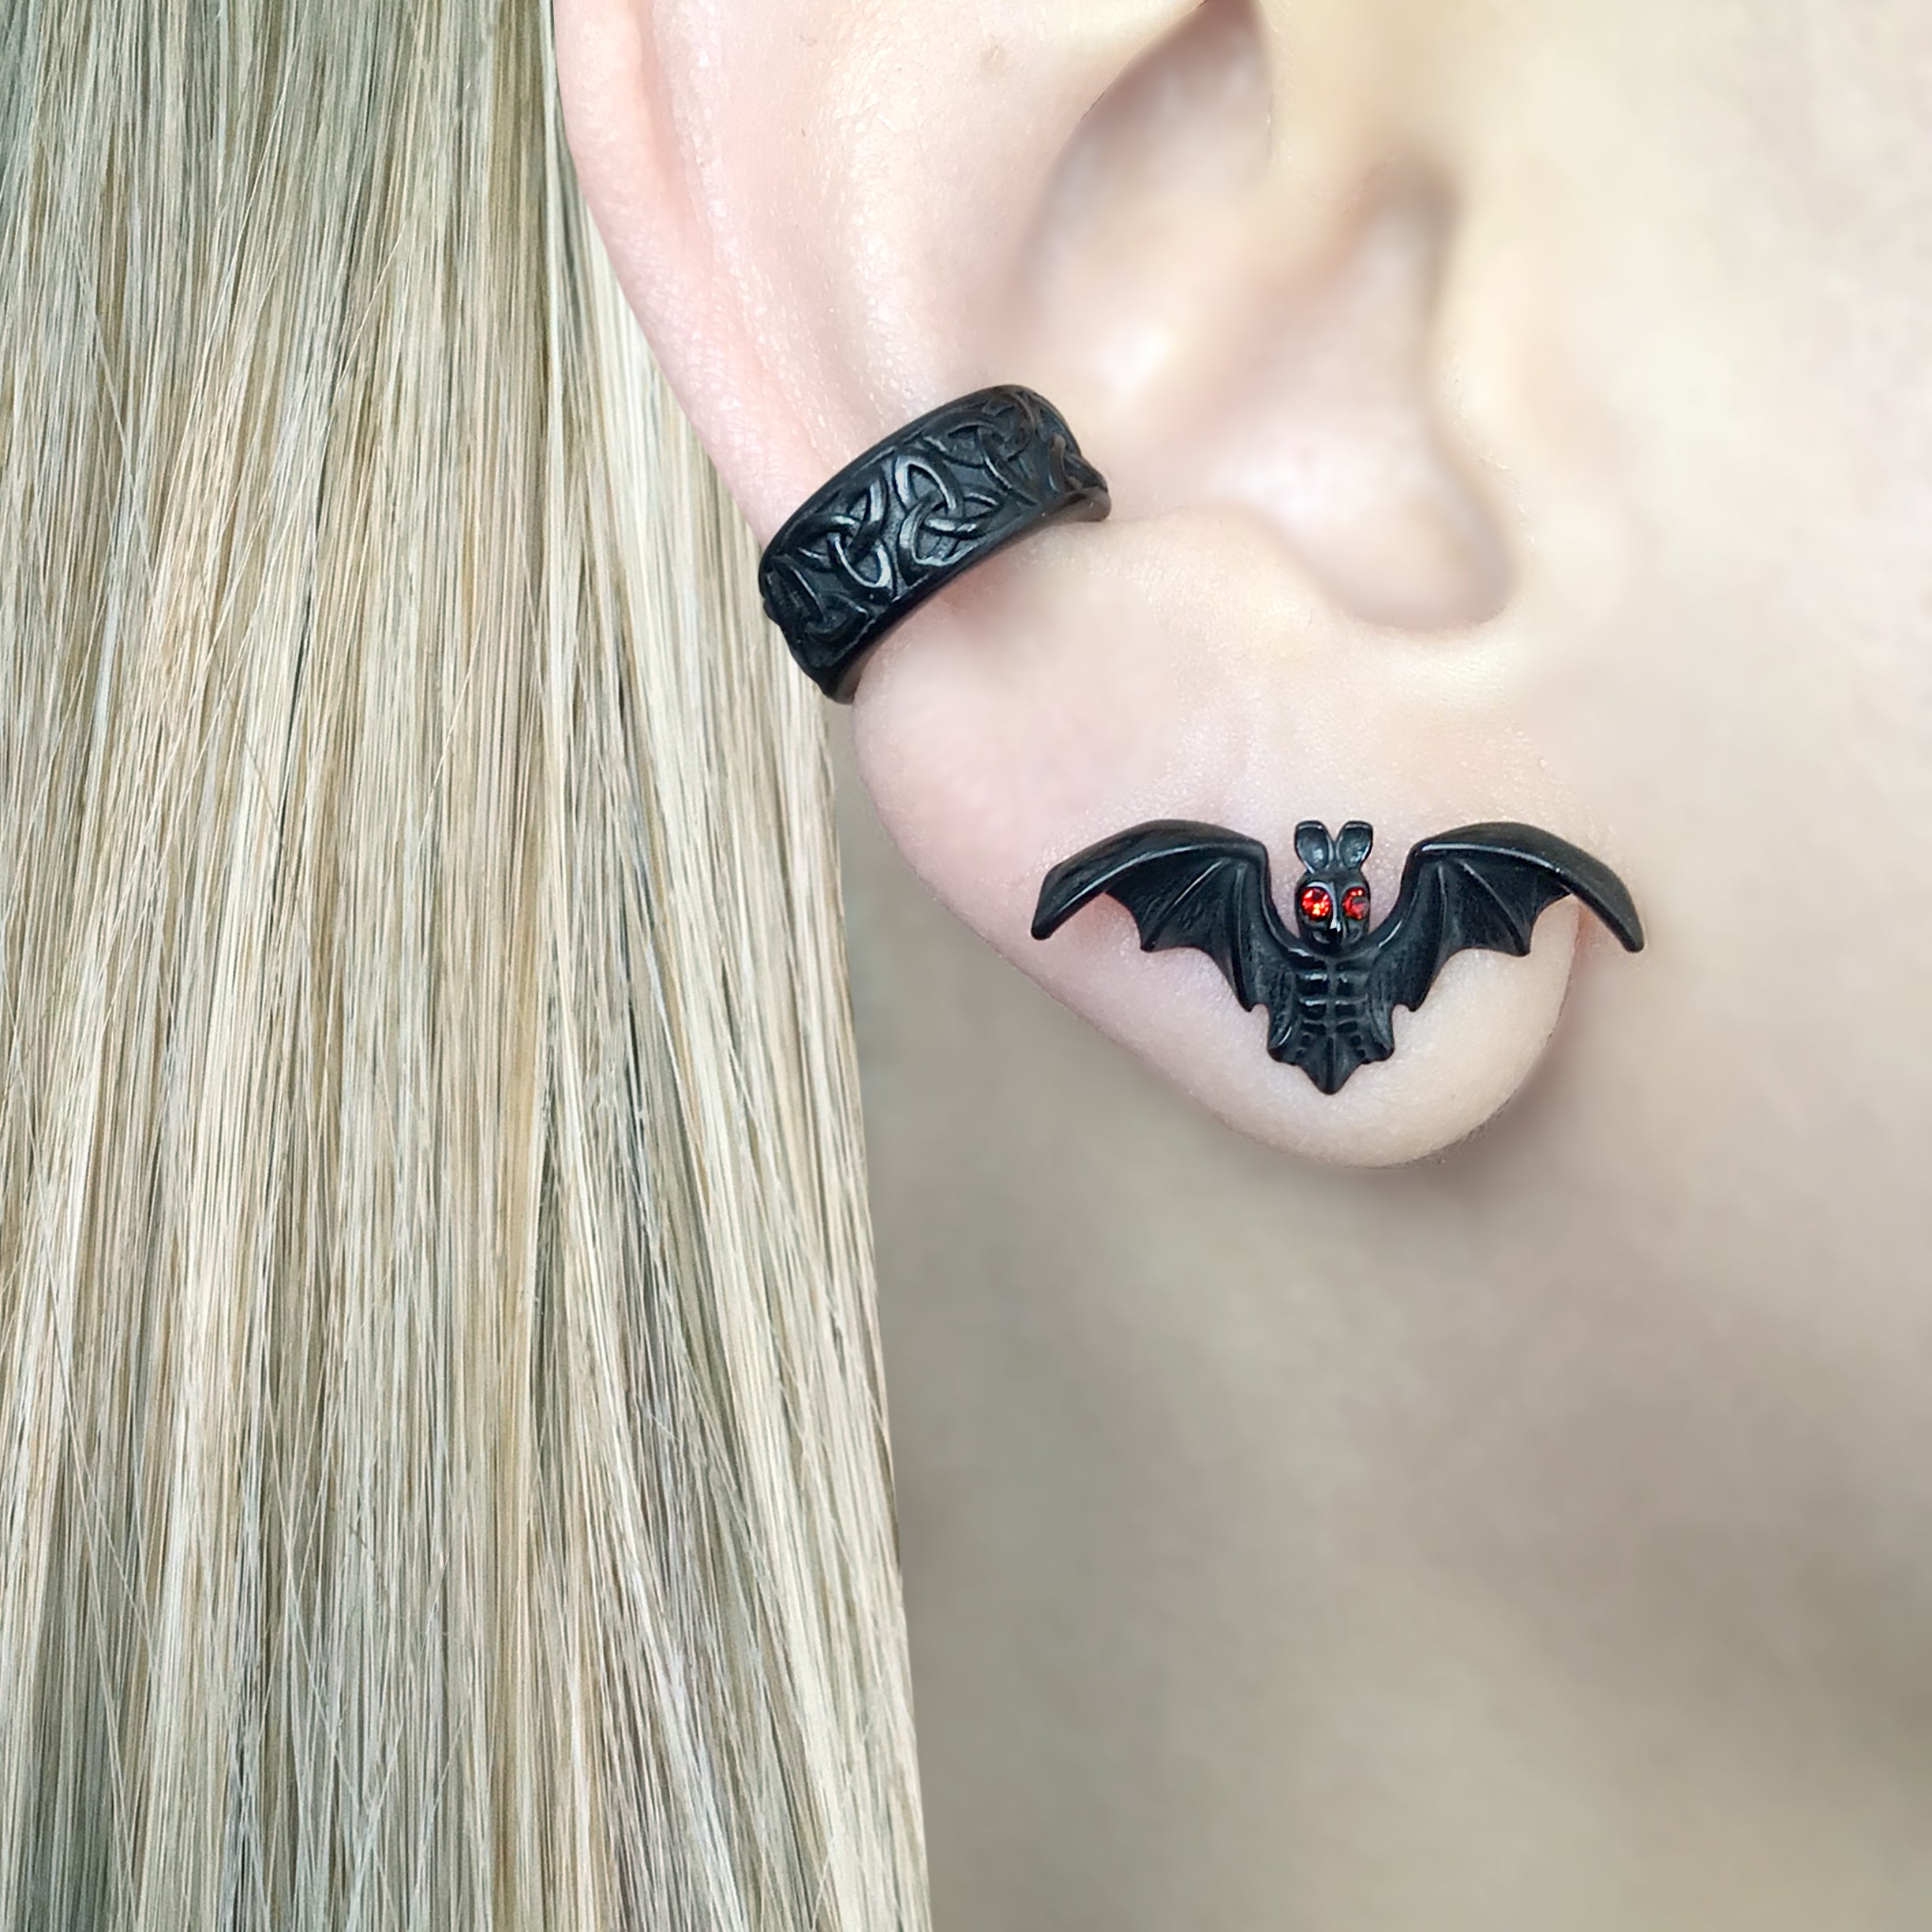 BATS EARRINGS